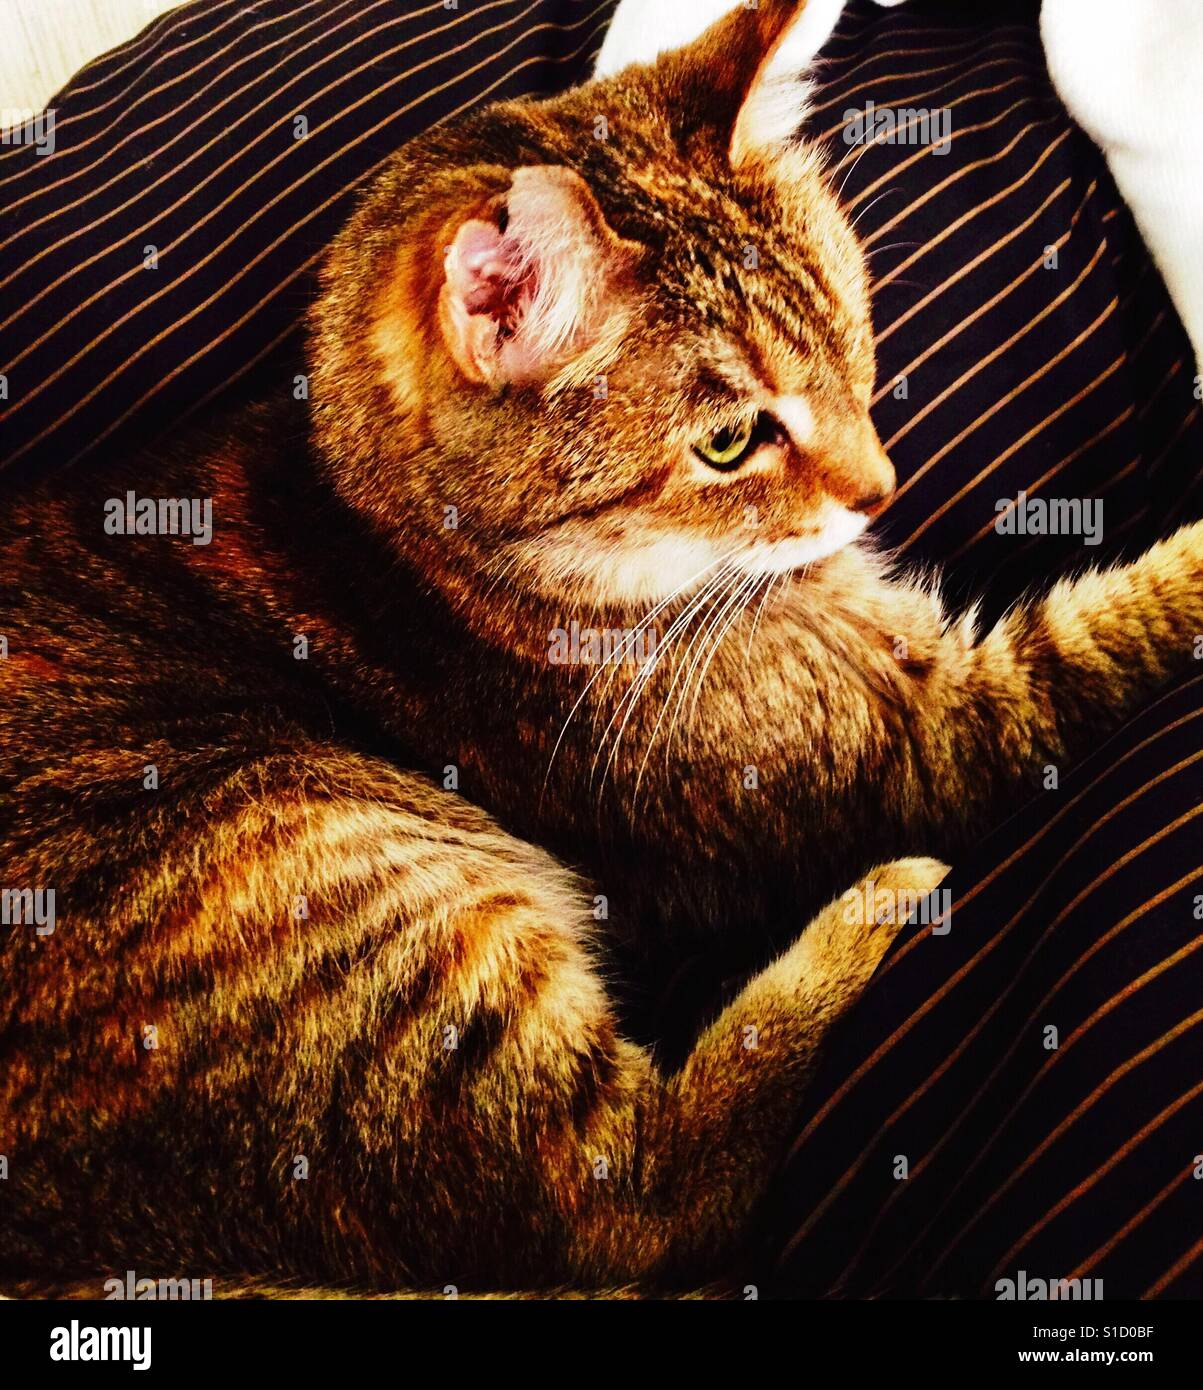 Belle branche ou American Shorthair chat tigré aux yeux verts Banque D'Images